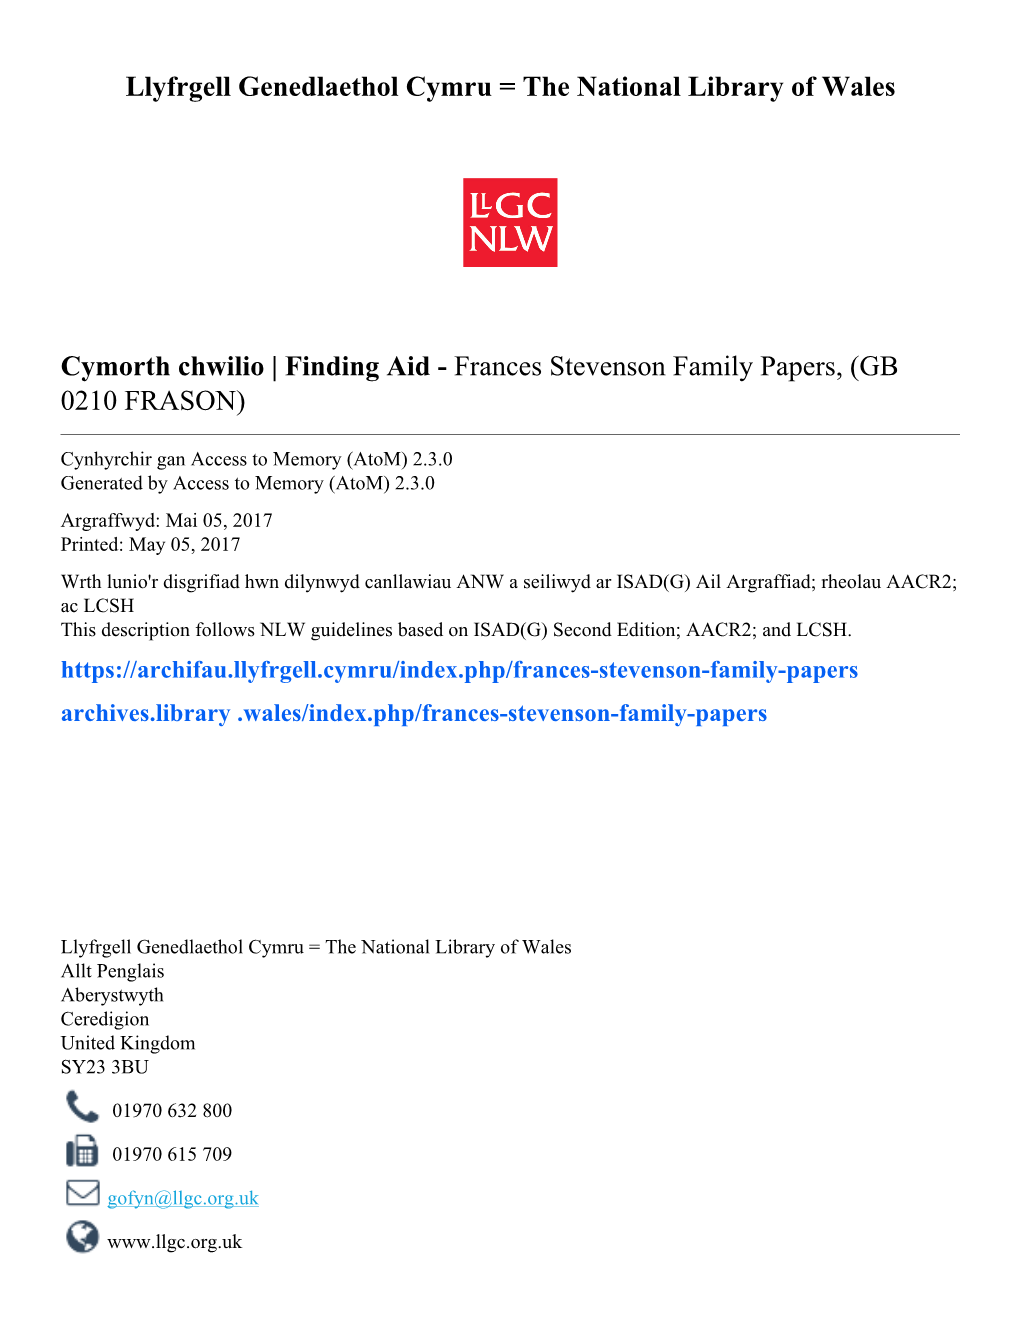 Frances Stevenson Family Papers, (GB 0210 FRASON)